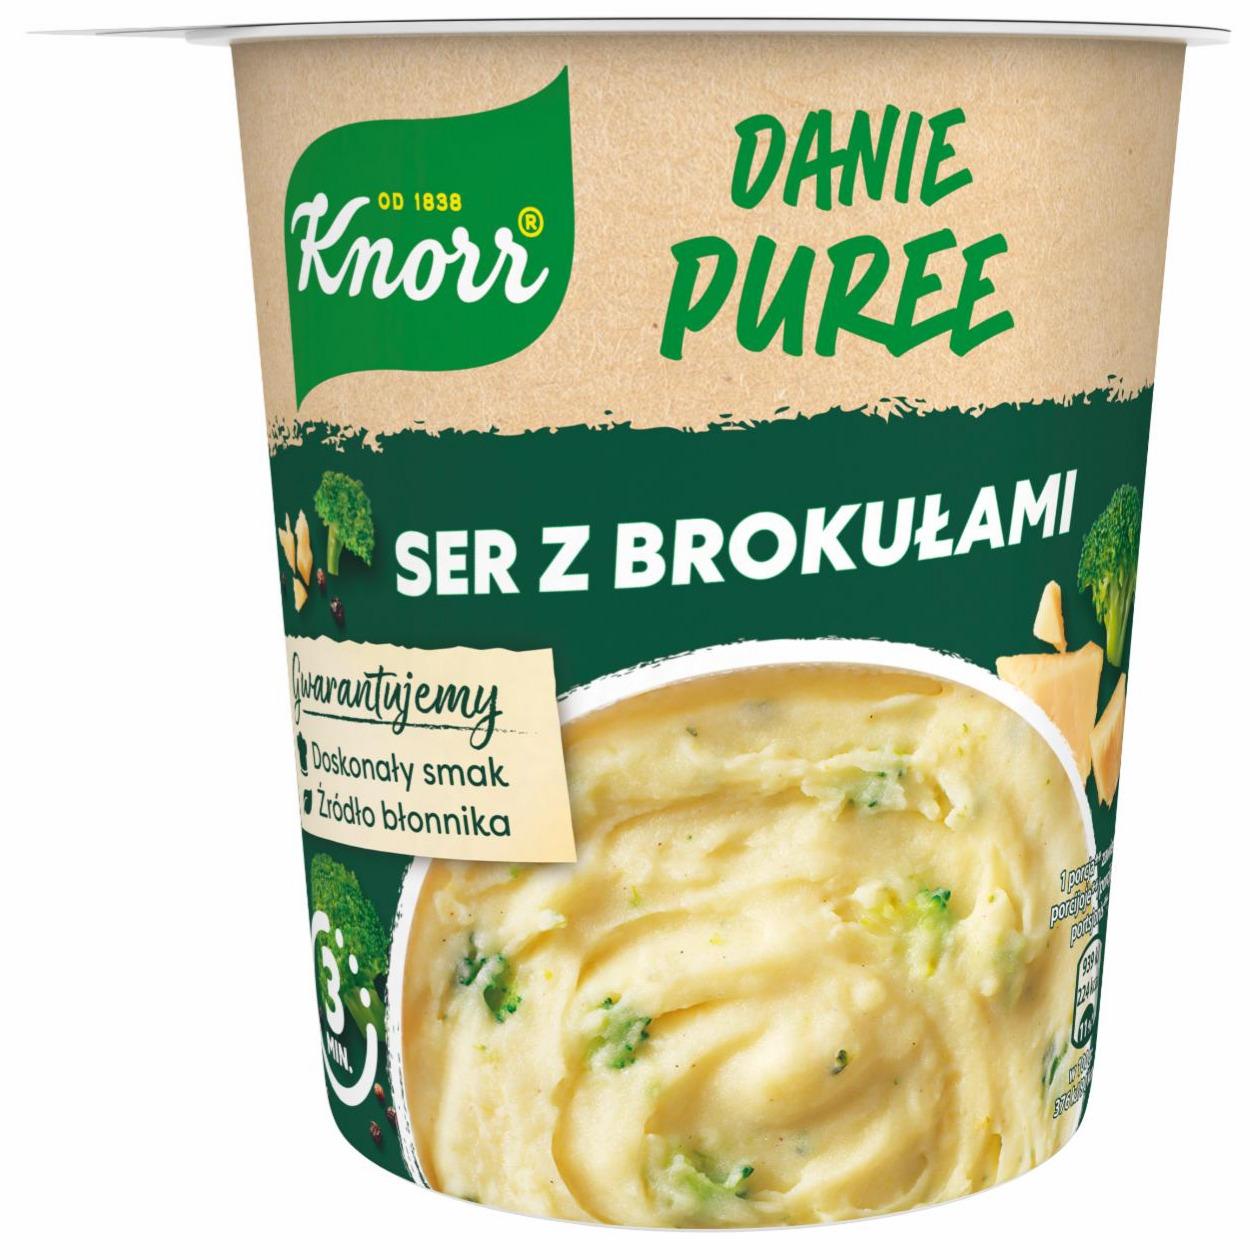 Zdjęcia - Danie puree ser z brokułami Knorr